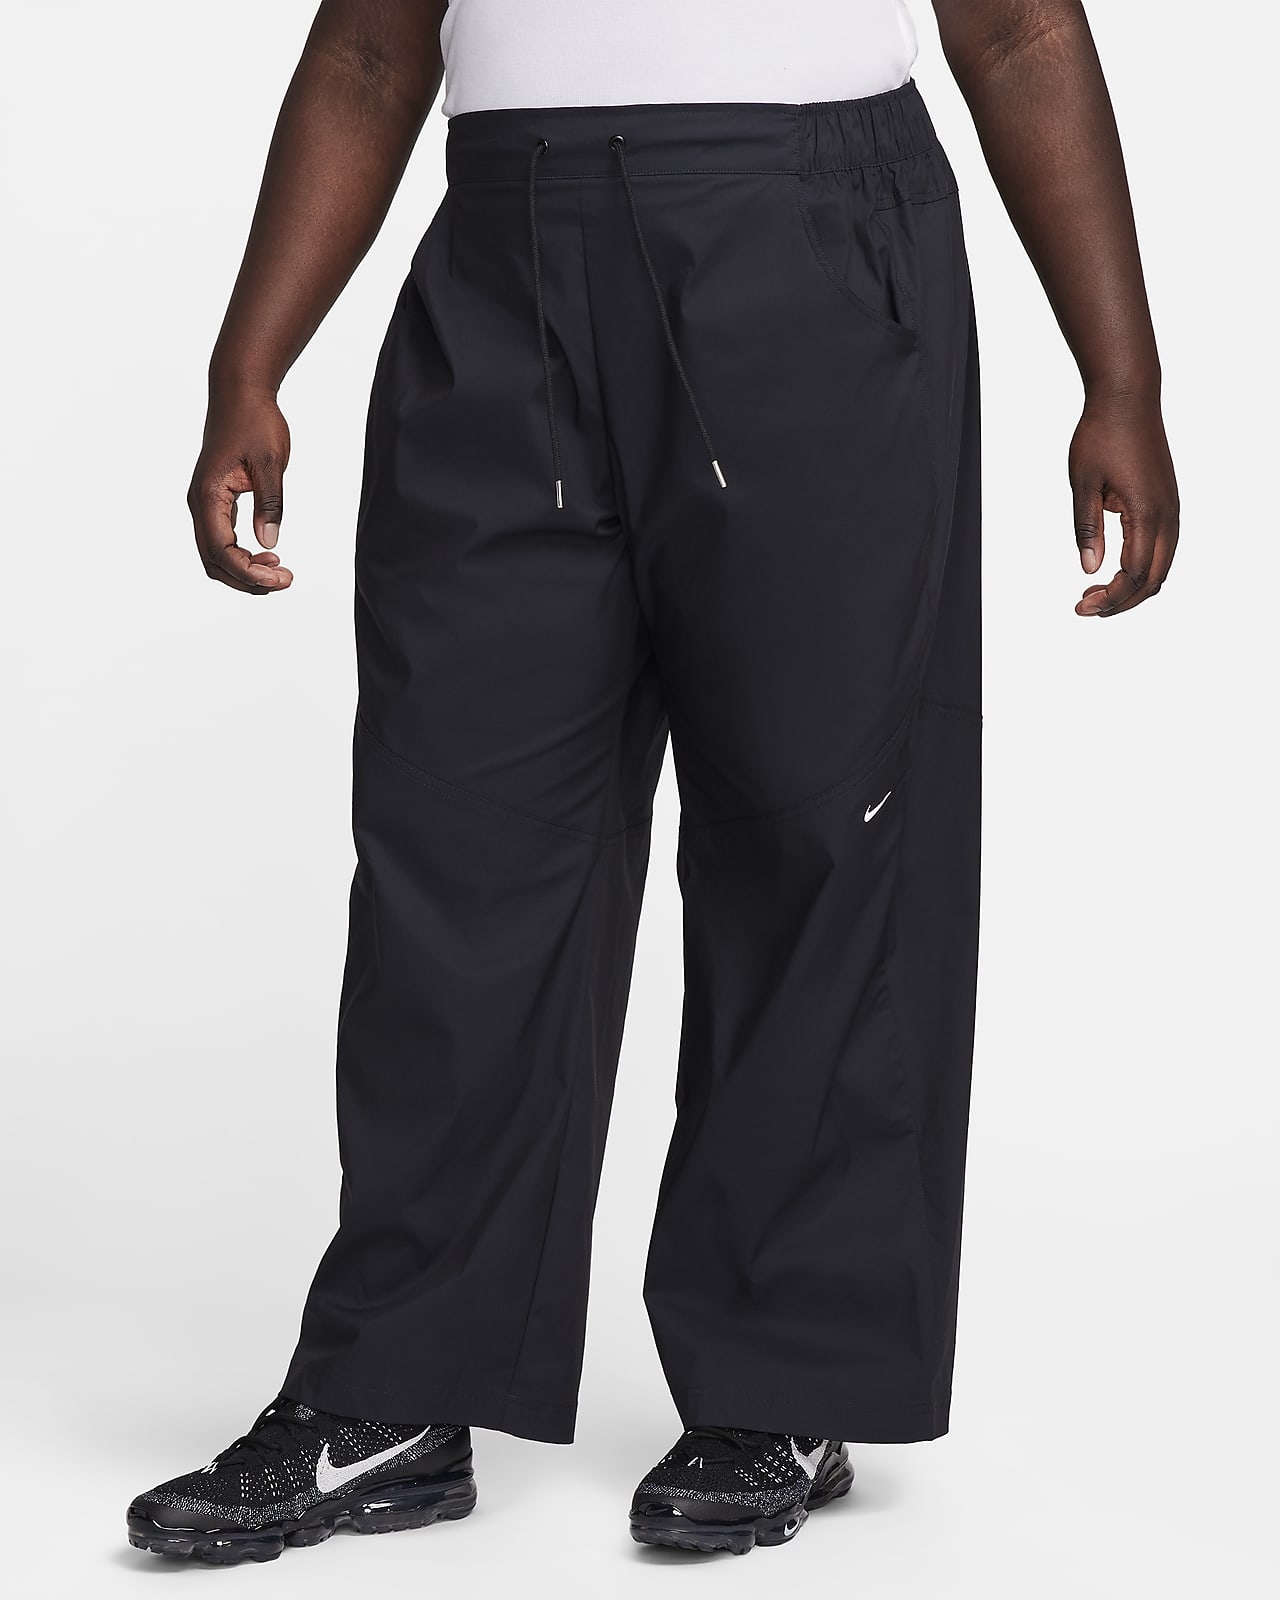 Γυναικείο ψηλόμεσο υφαντό παντελόνι Nike Sportswear Essential (μεγάλα μεγέθη)